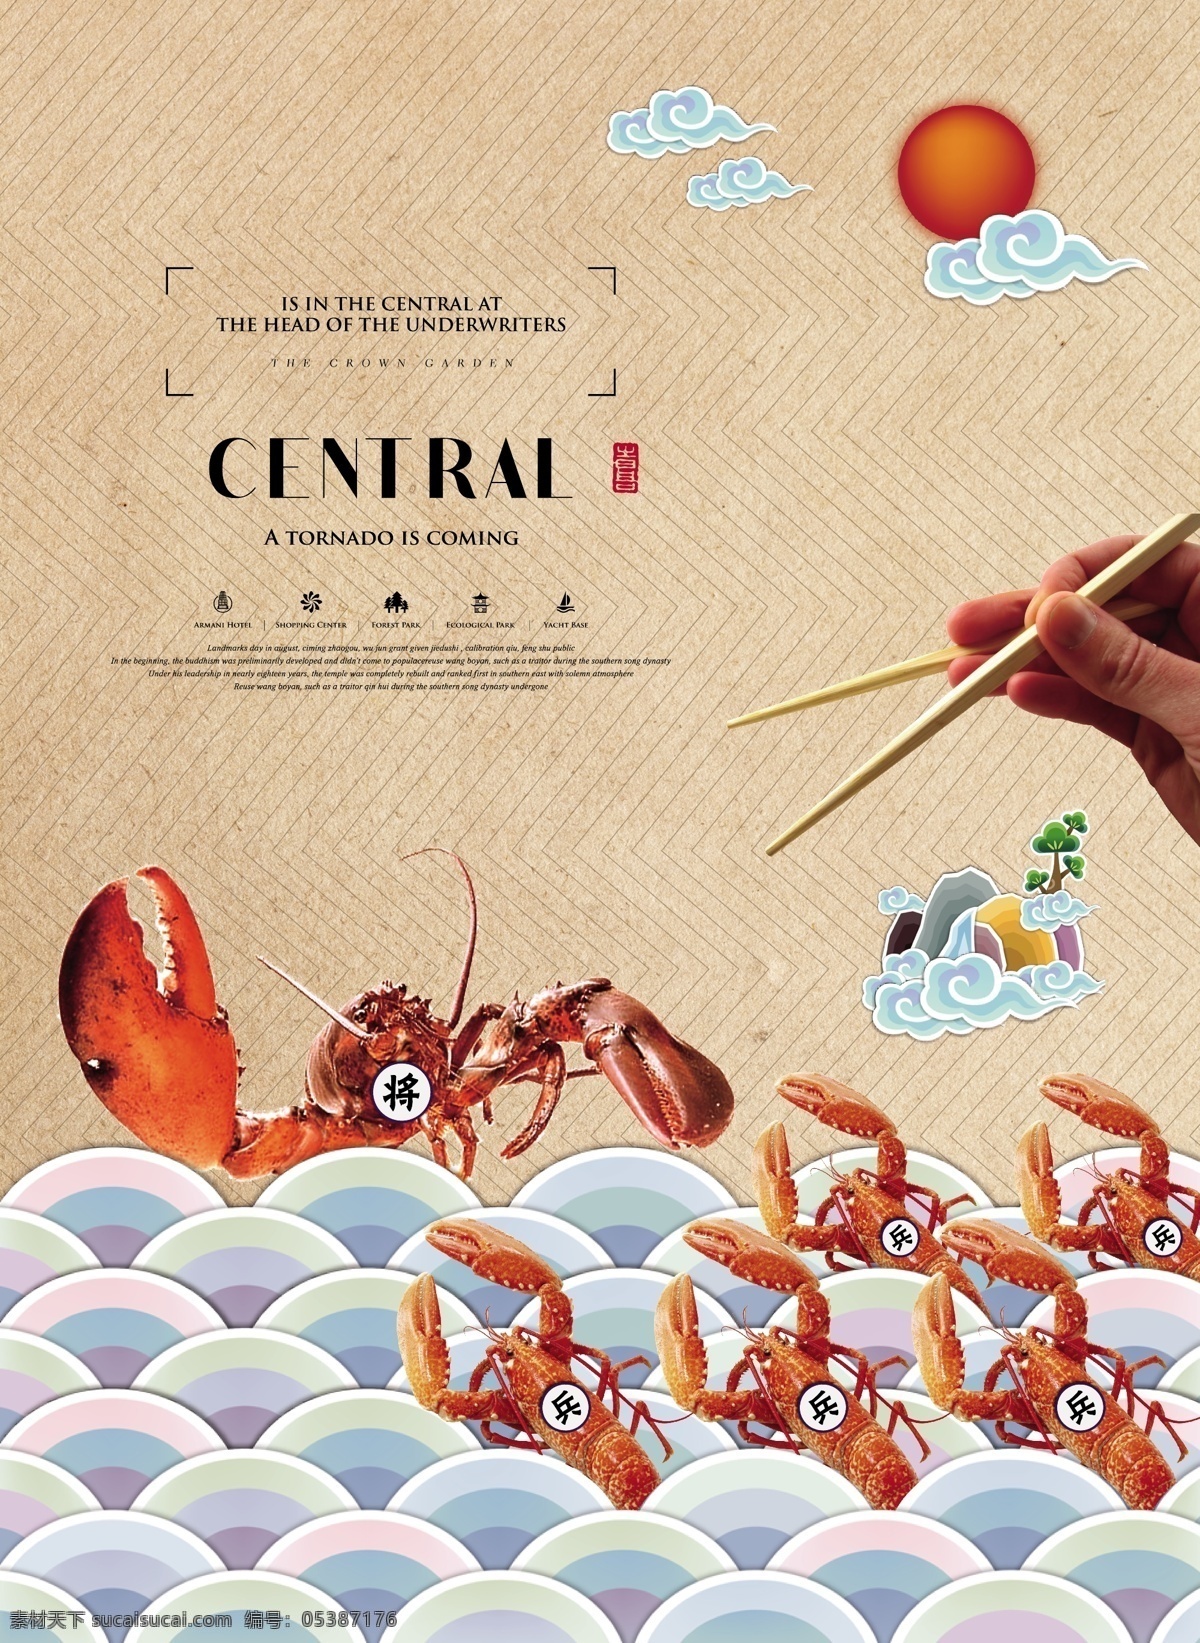 美食 小 龙虾 促销 海报 创意 夏天 小龙虾 筷子